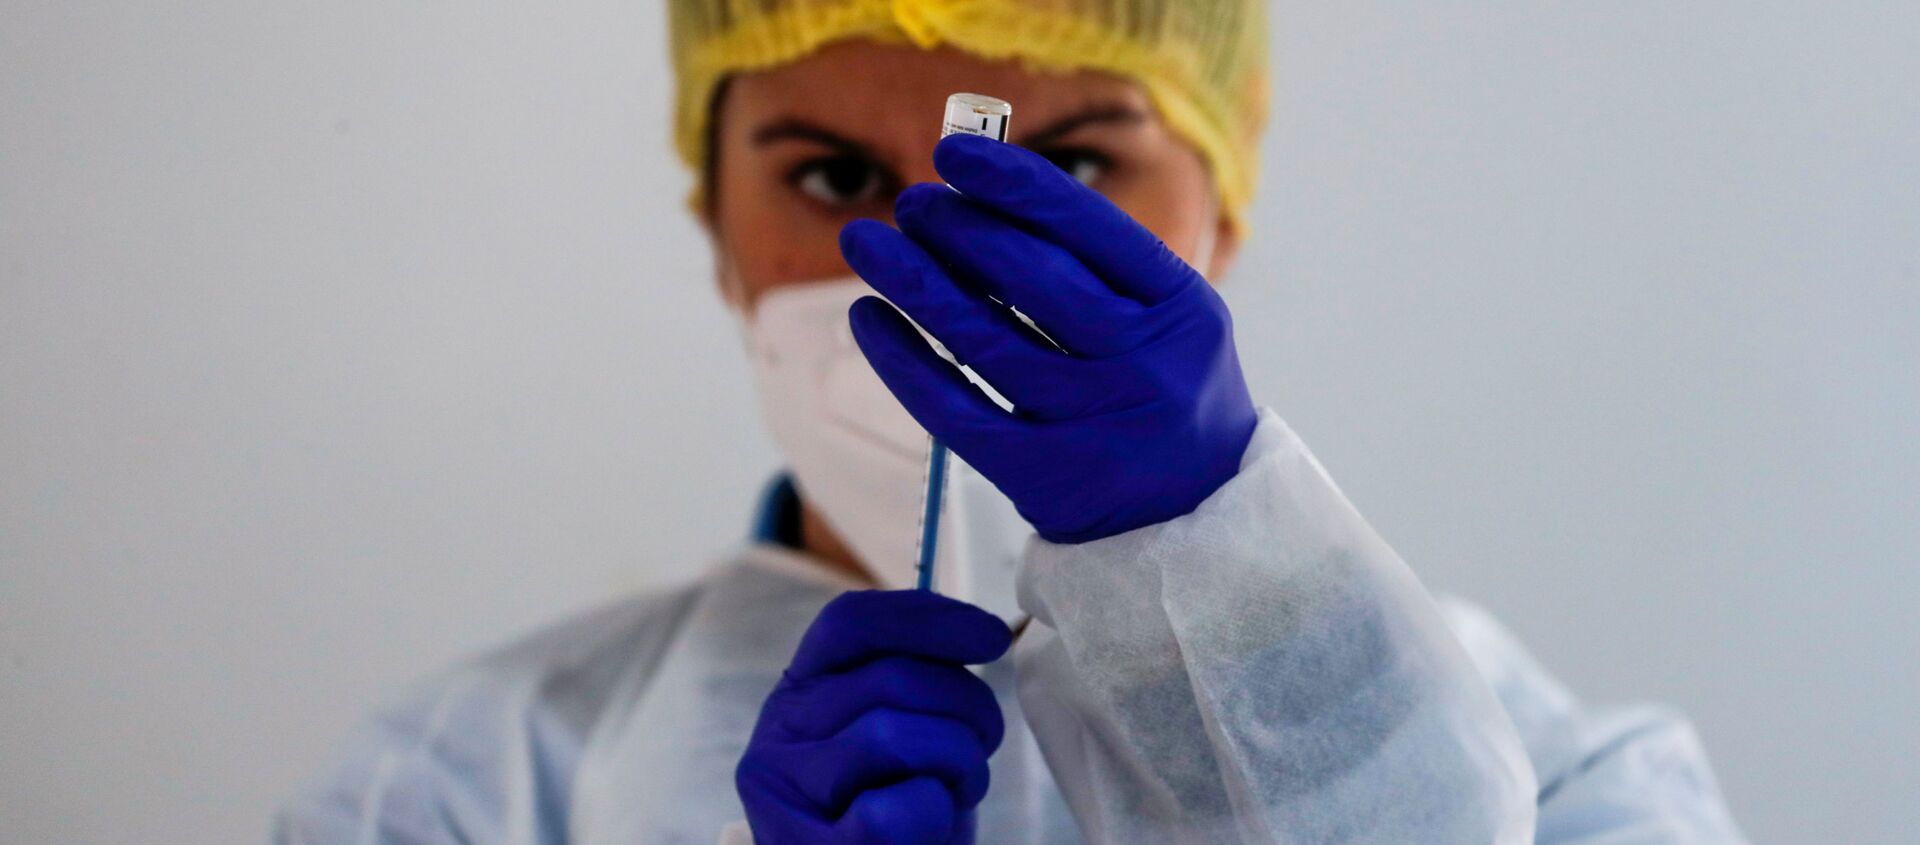 Медицинский работник готовит дозу вакцины Pfizer-BioNTech - Sputnik Грузия, 1920, 18.03.2021